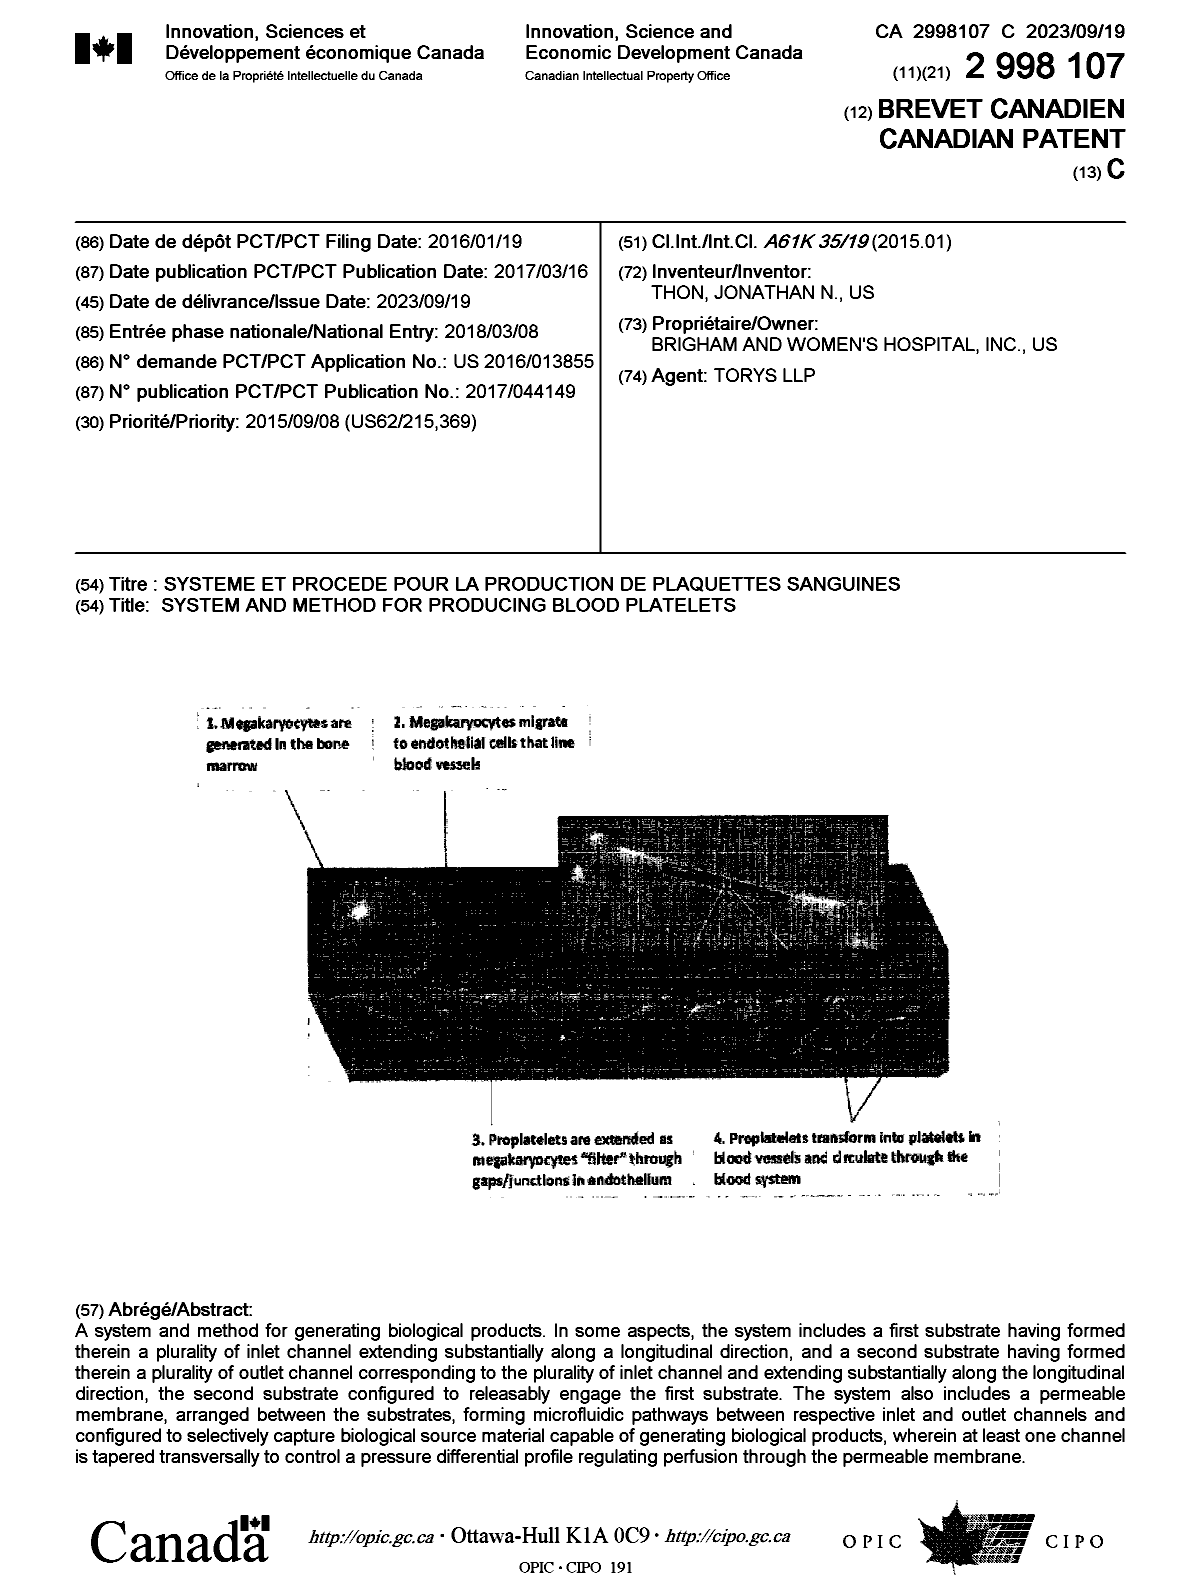 Document de brevet canadien 2998107. Page couverture 20230830. Image 1 de 1